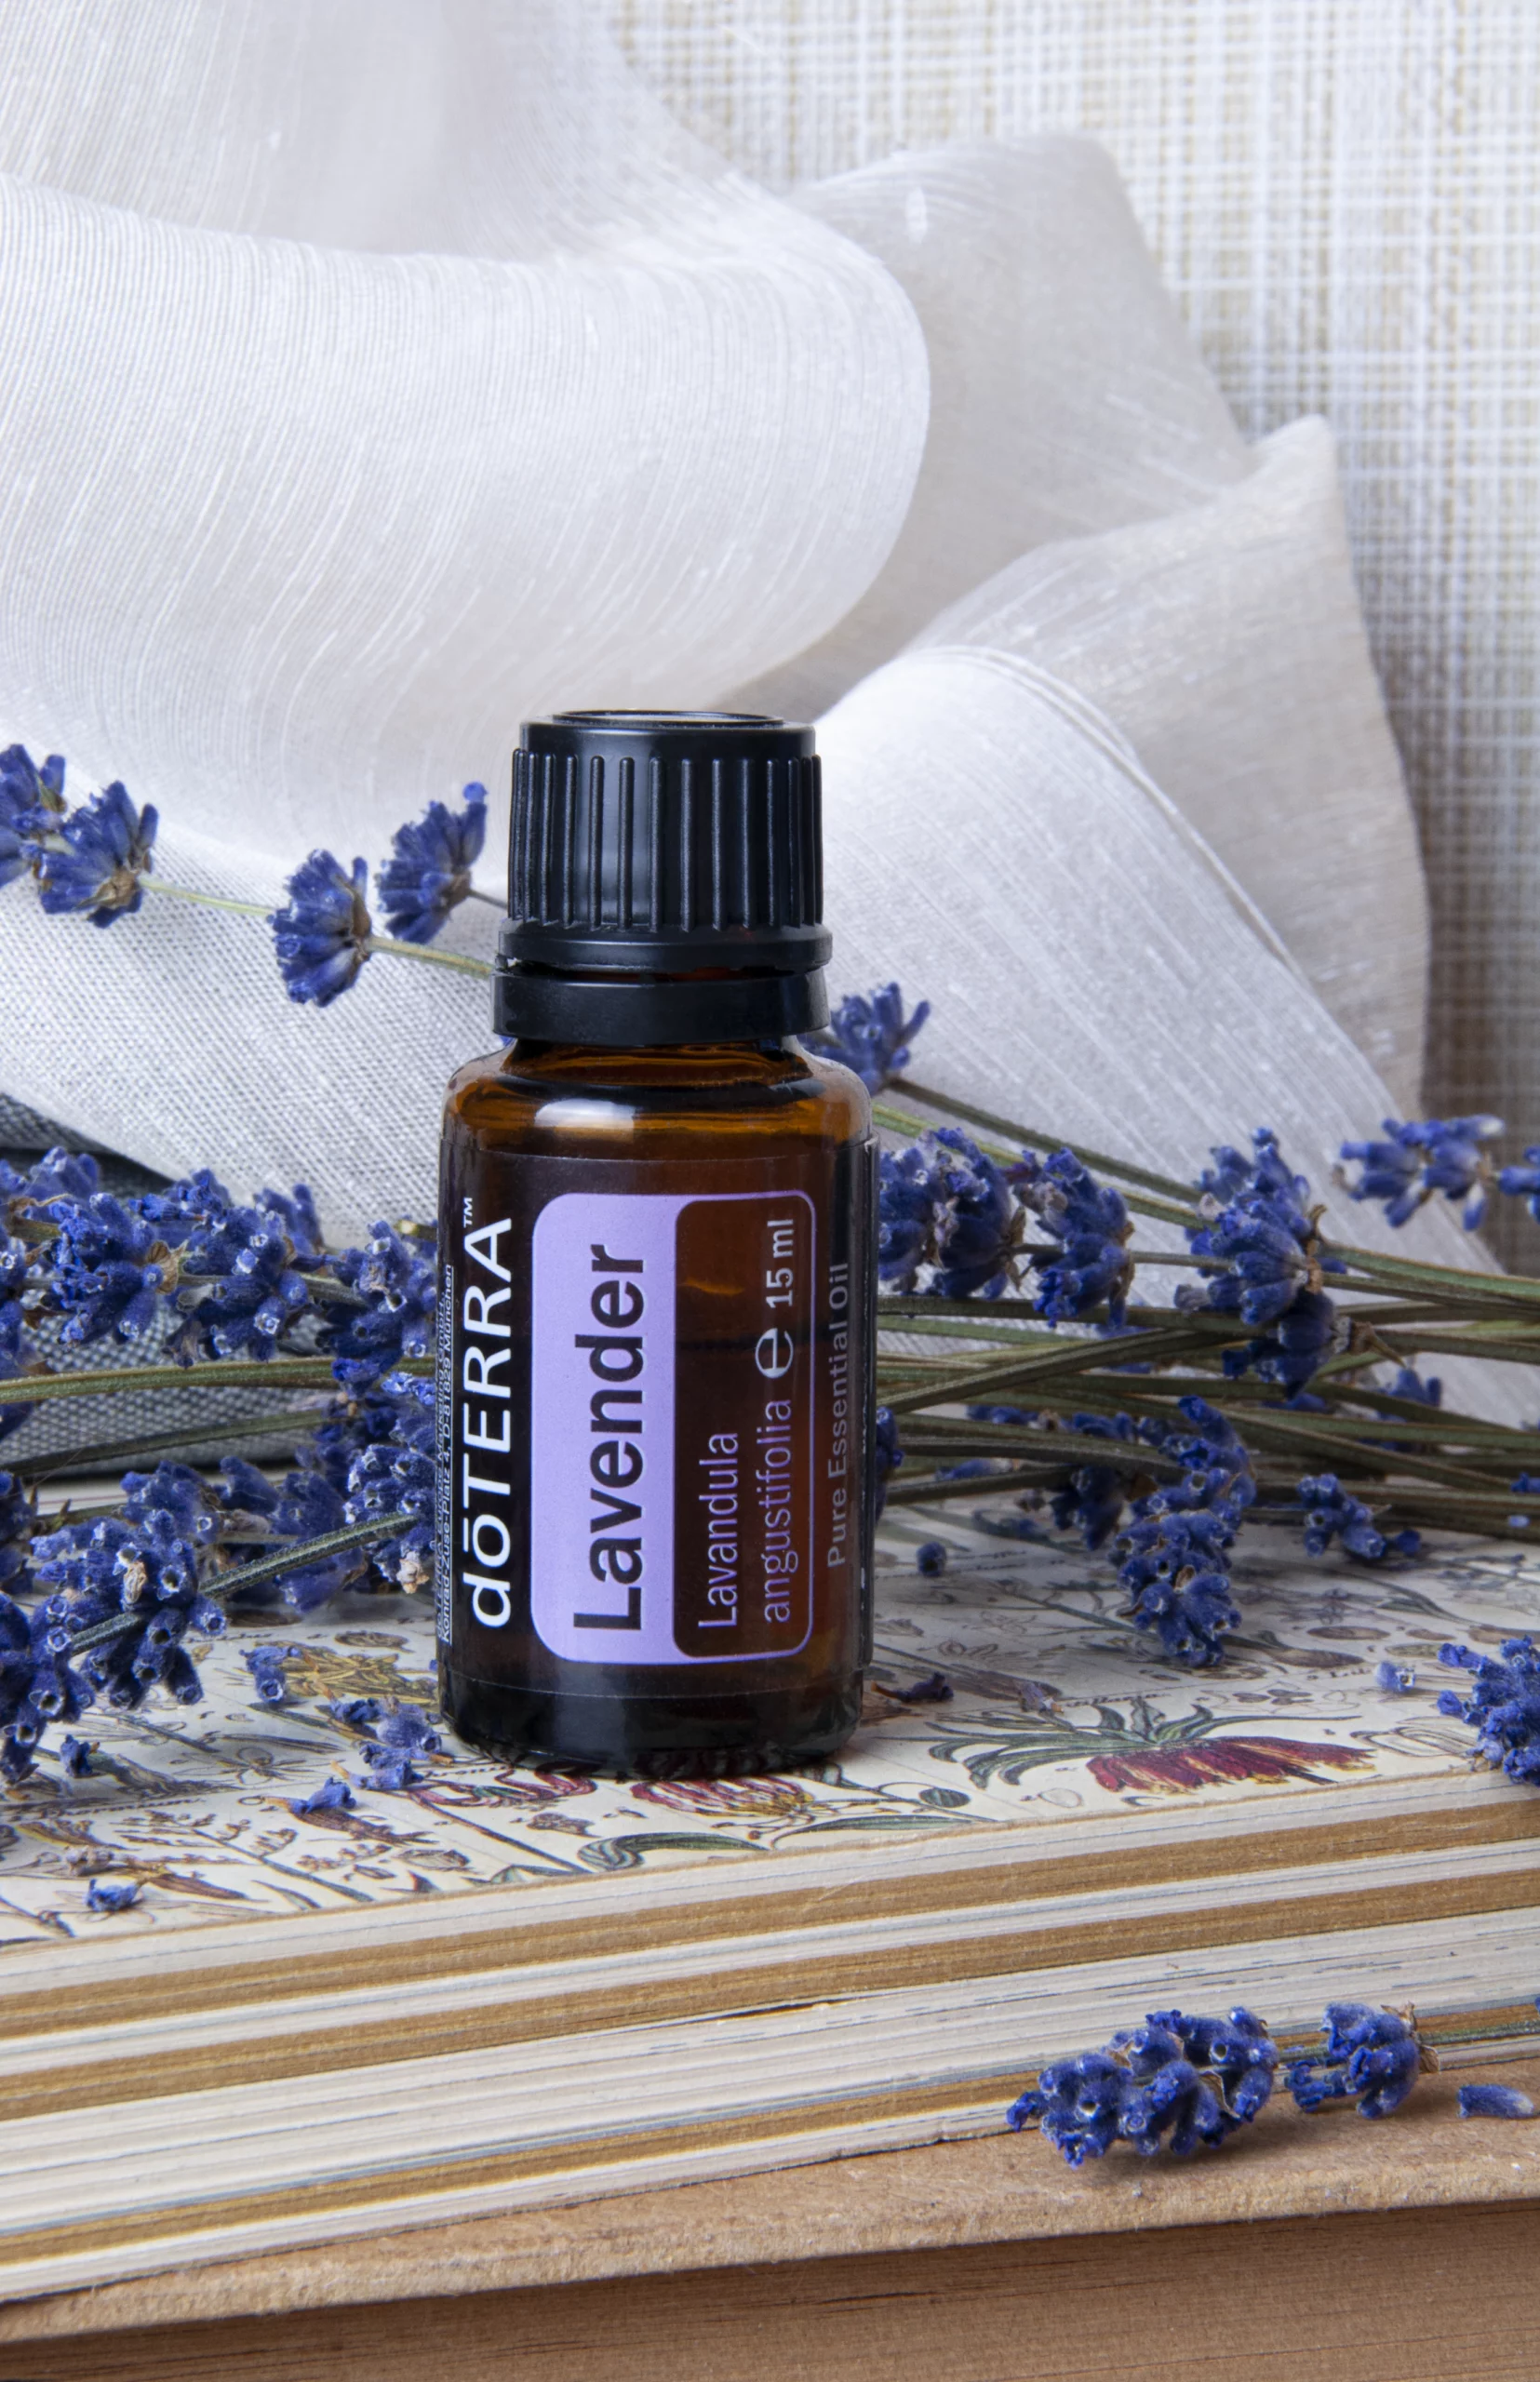 Lavender Essential Oil - A Natural Antihistamine